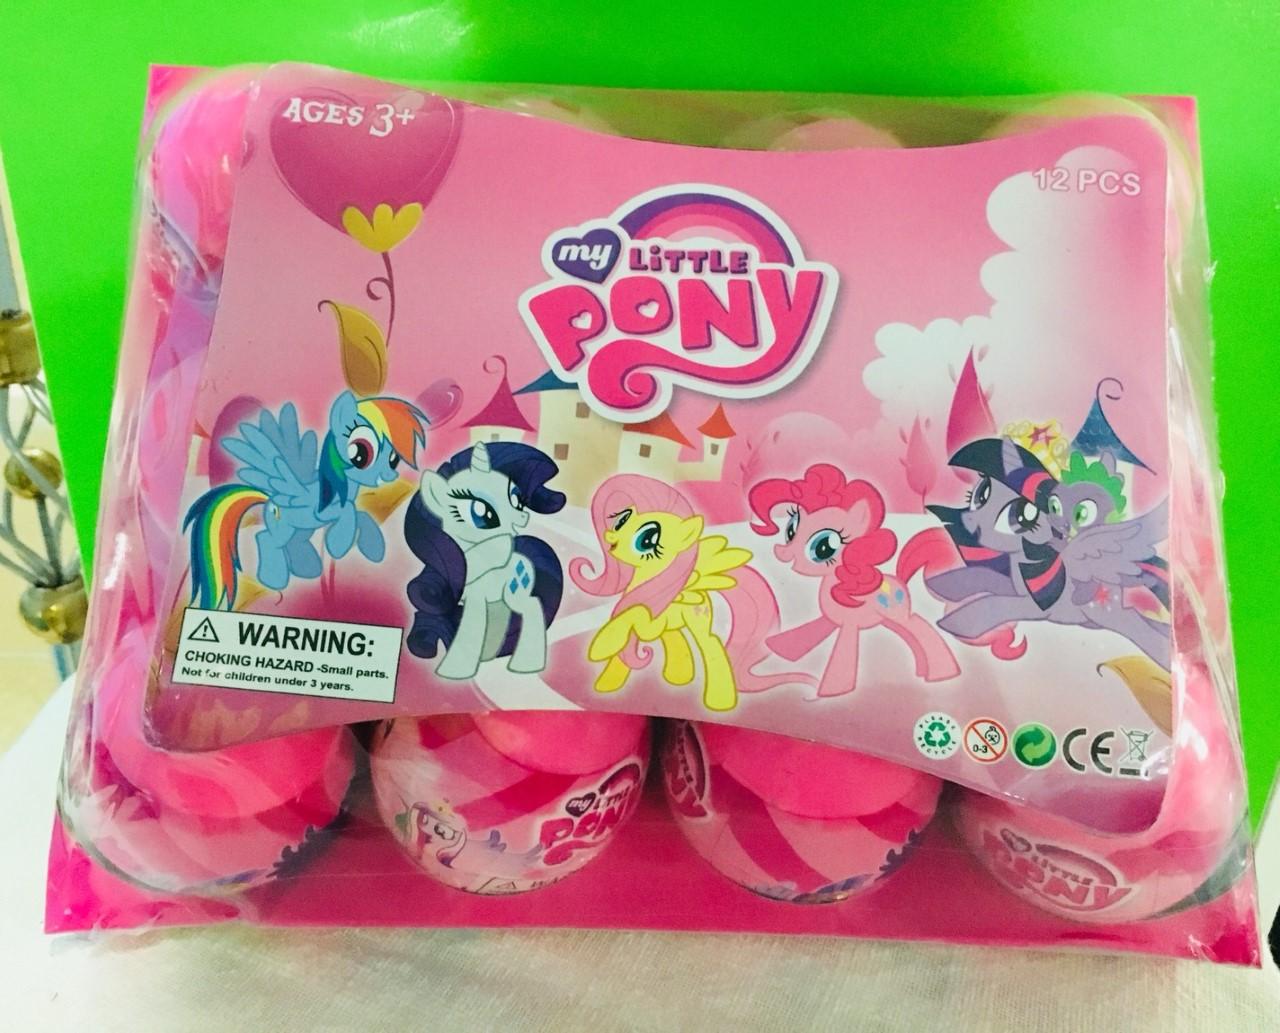 ไข่เซอร์ไพรส์ม้าโพนี Pony egg surprise แพ็คละ 12ใบ